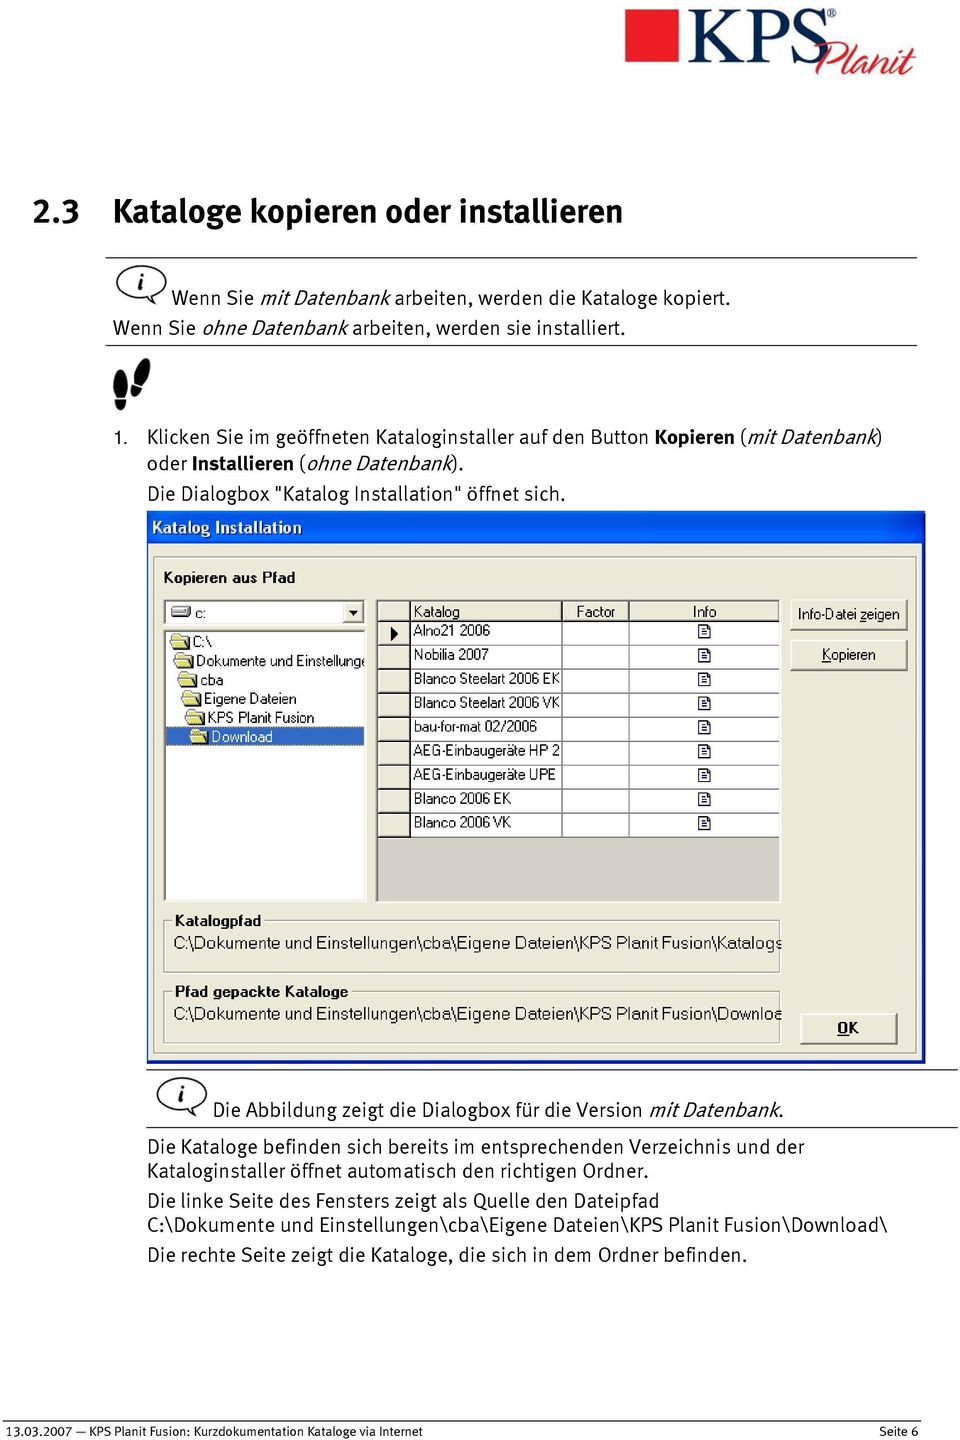 Die Abbildung zeigt die Dialogbox für die Version mit Datenbank. Die Kataloge befinden sich bereits im entsprechenden Verzeichnis und der Kataloginstaller öffnet automatisch den richtigen Ordner.